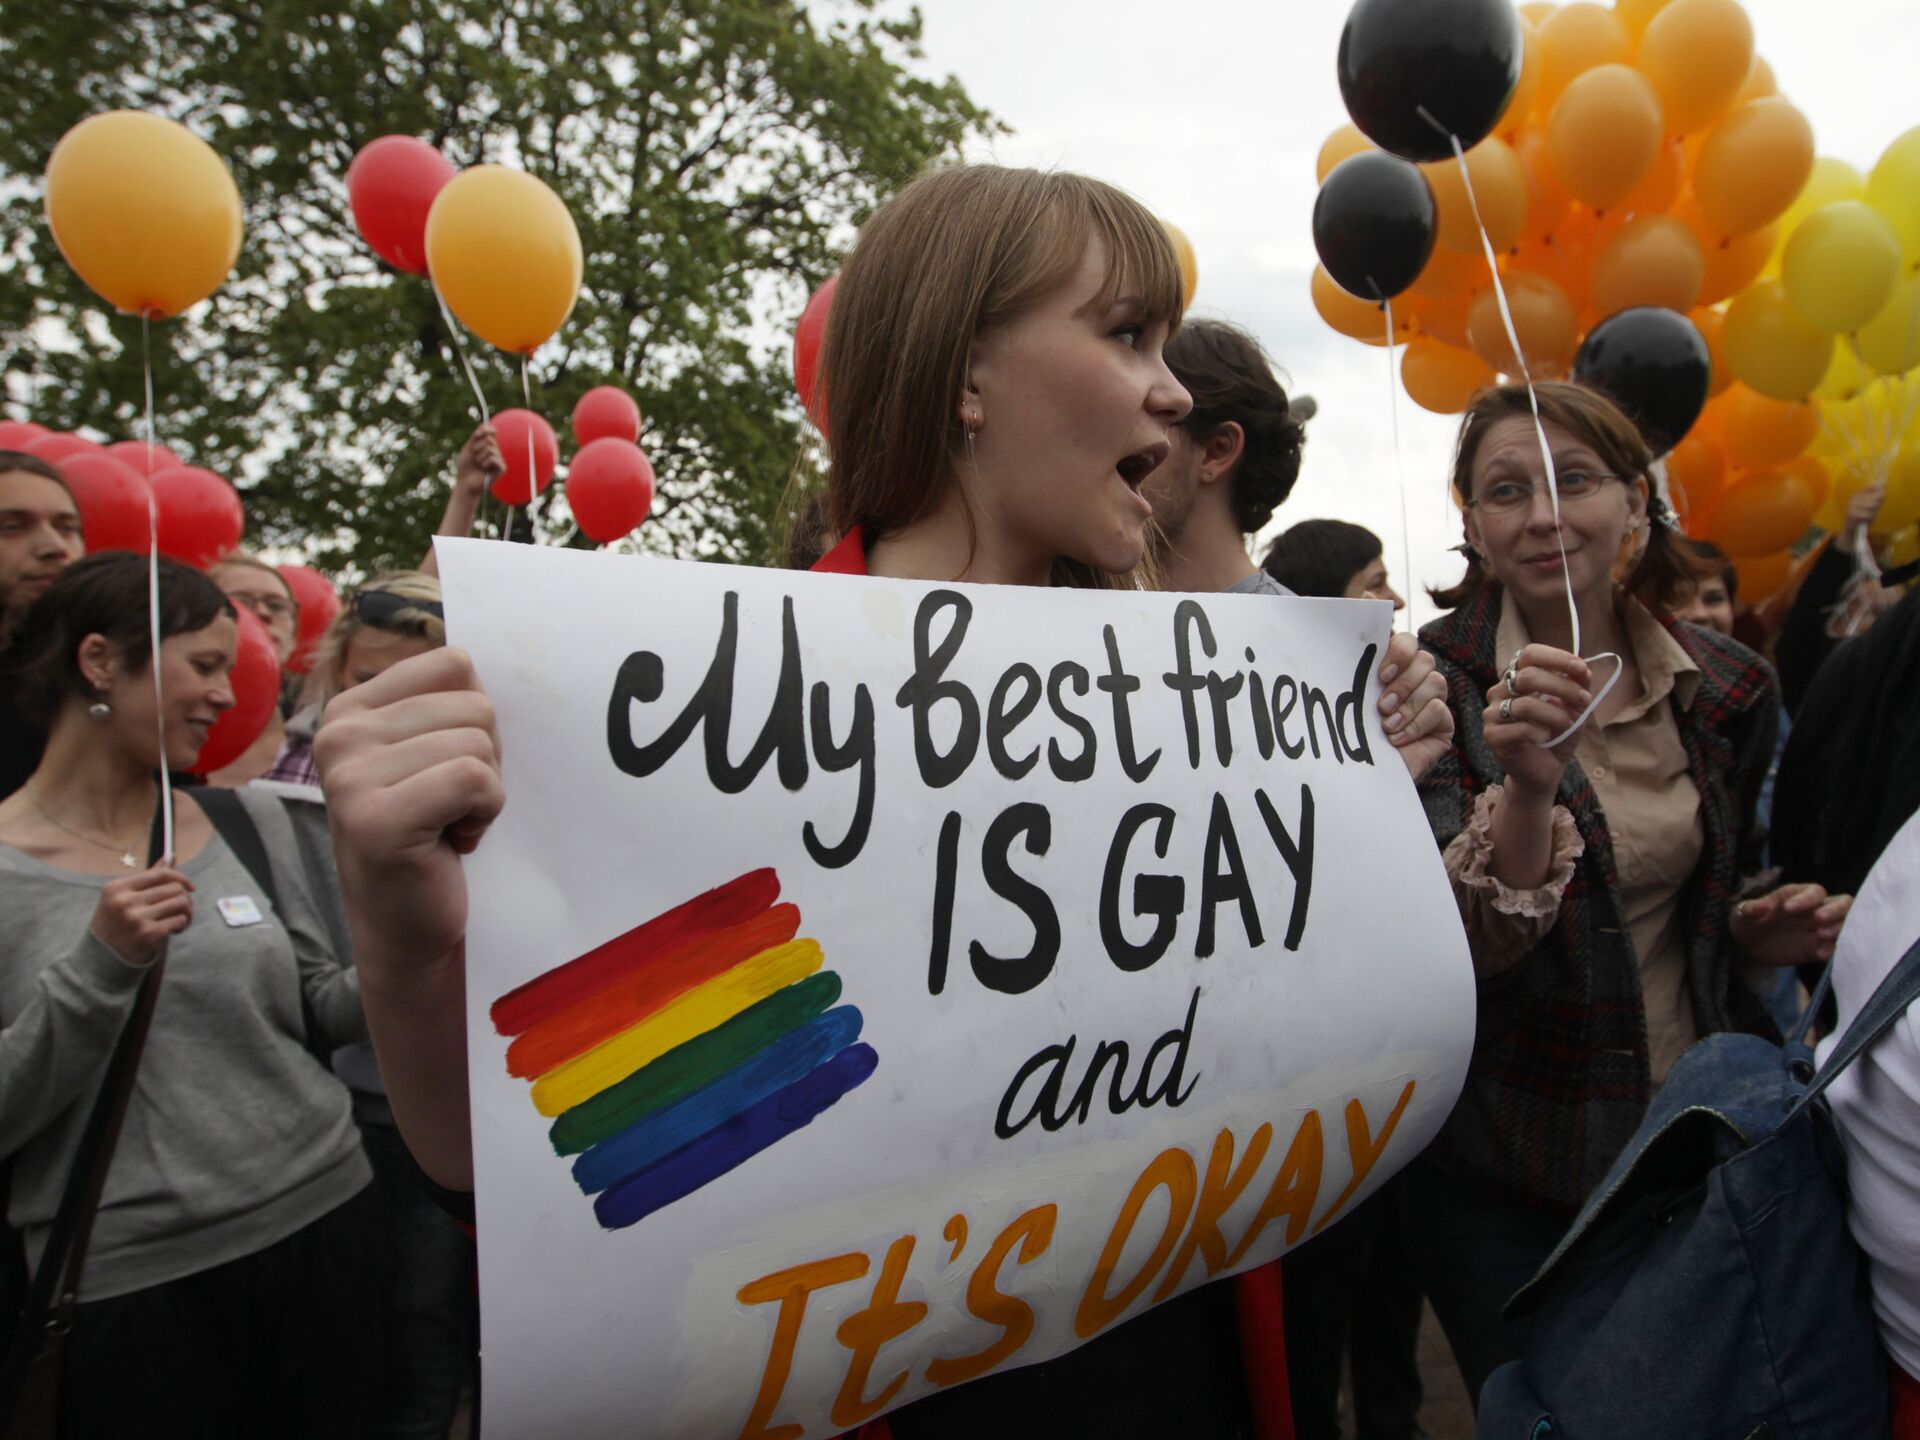 Россия не единственная страна с законами против геев (National Geographic,  США) | 18.01.2022, ИноСМИ